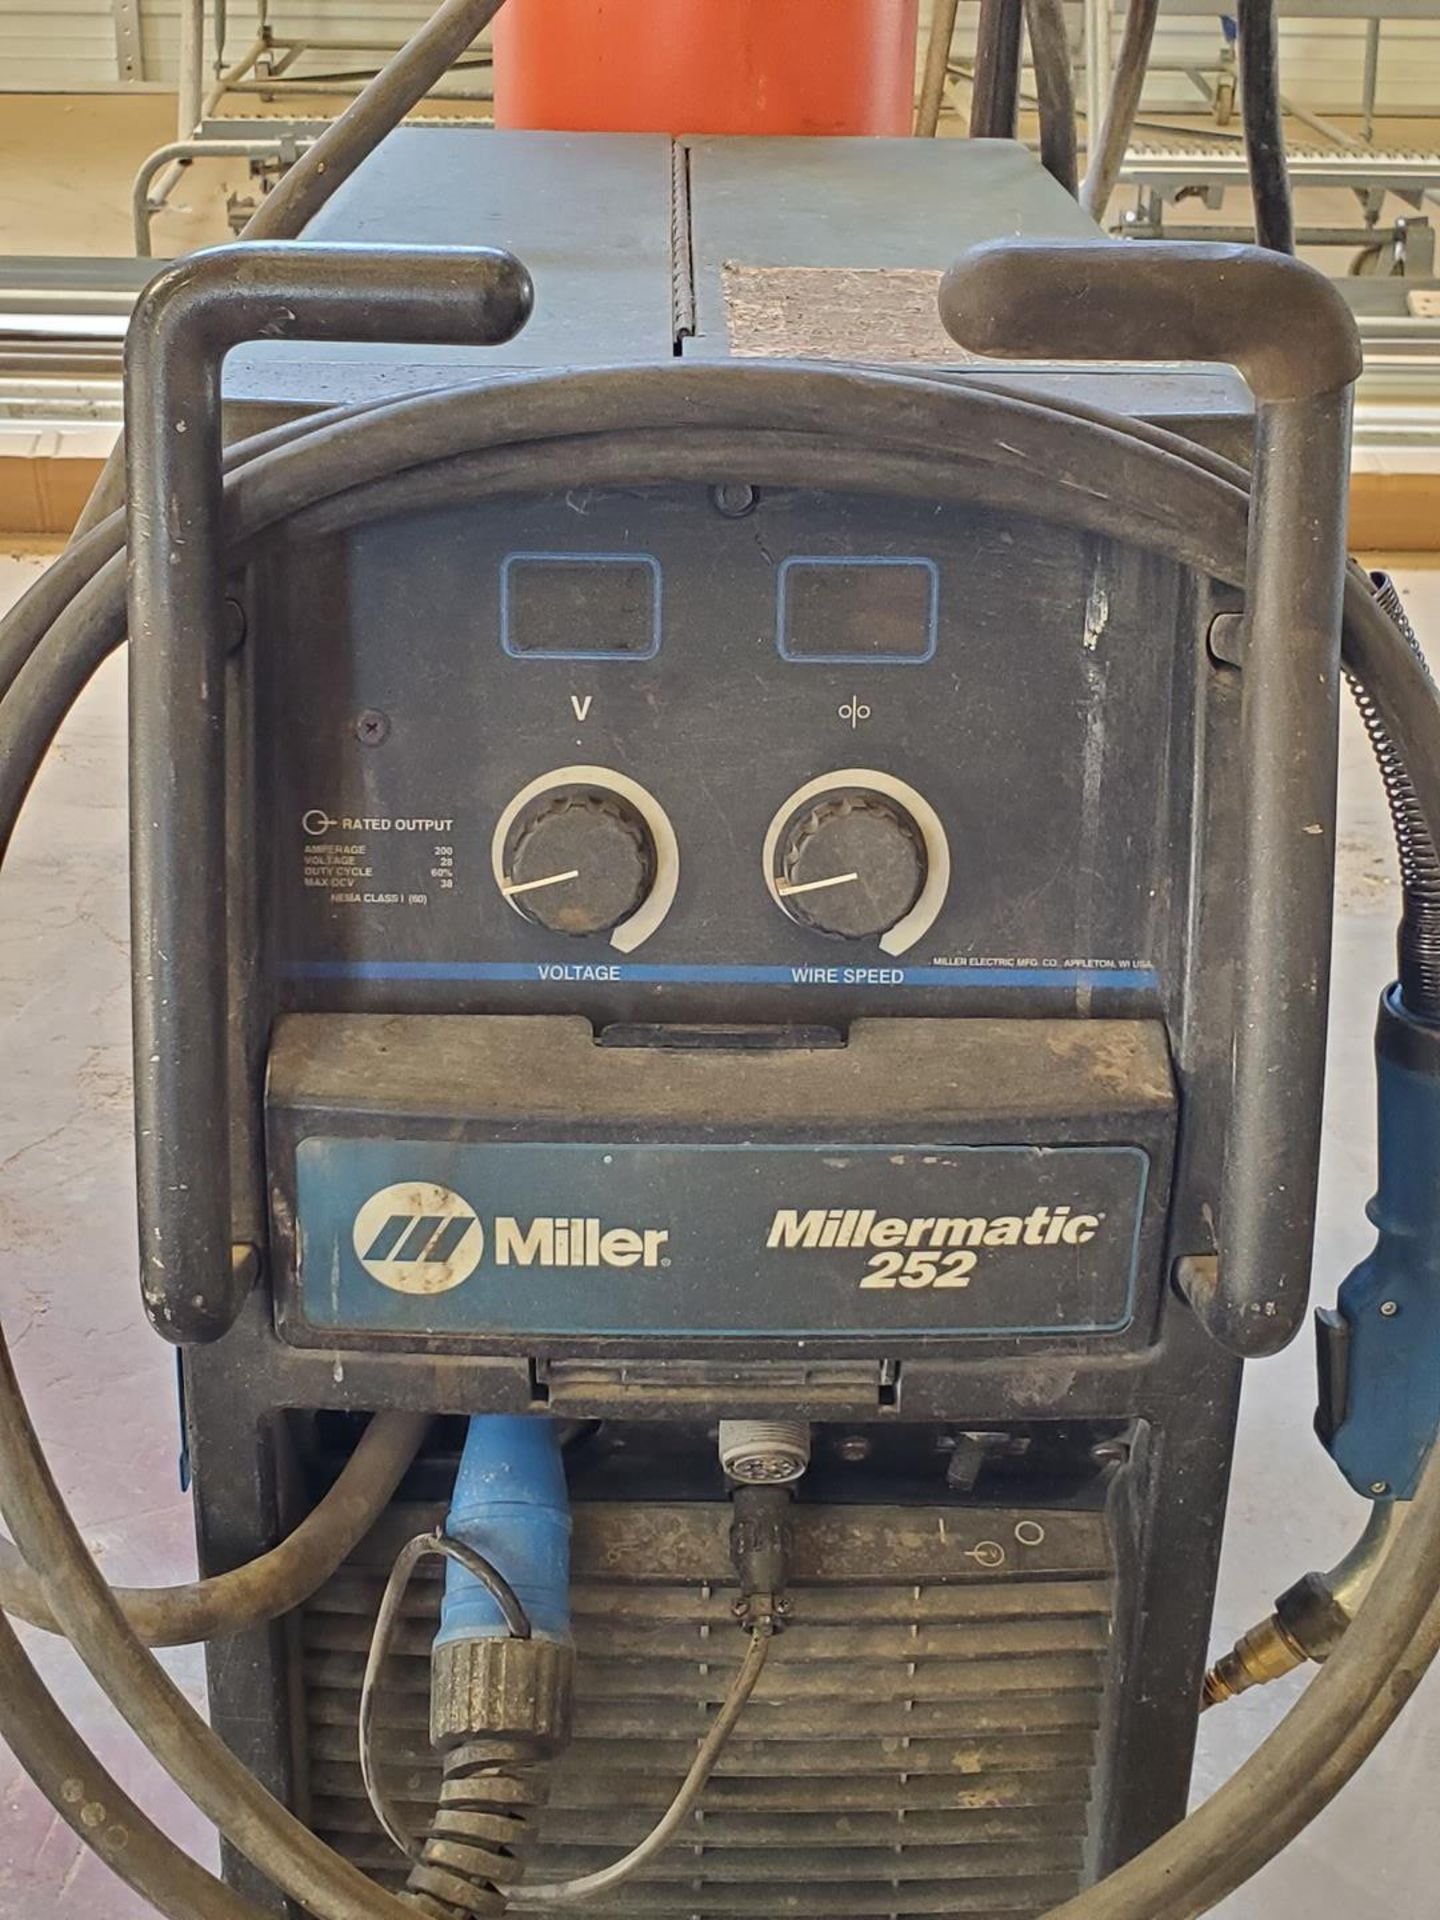 Miller Millermatic 252 Mig Welder 230-575V, 1PH, 60HZ - Image 4 of 5